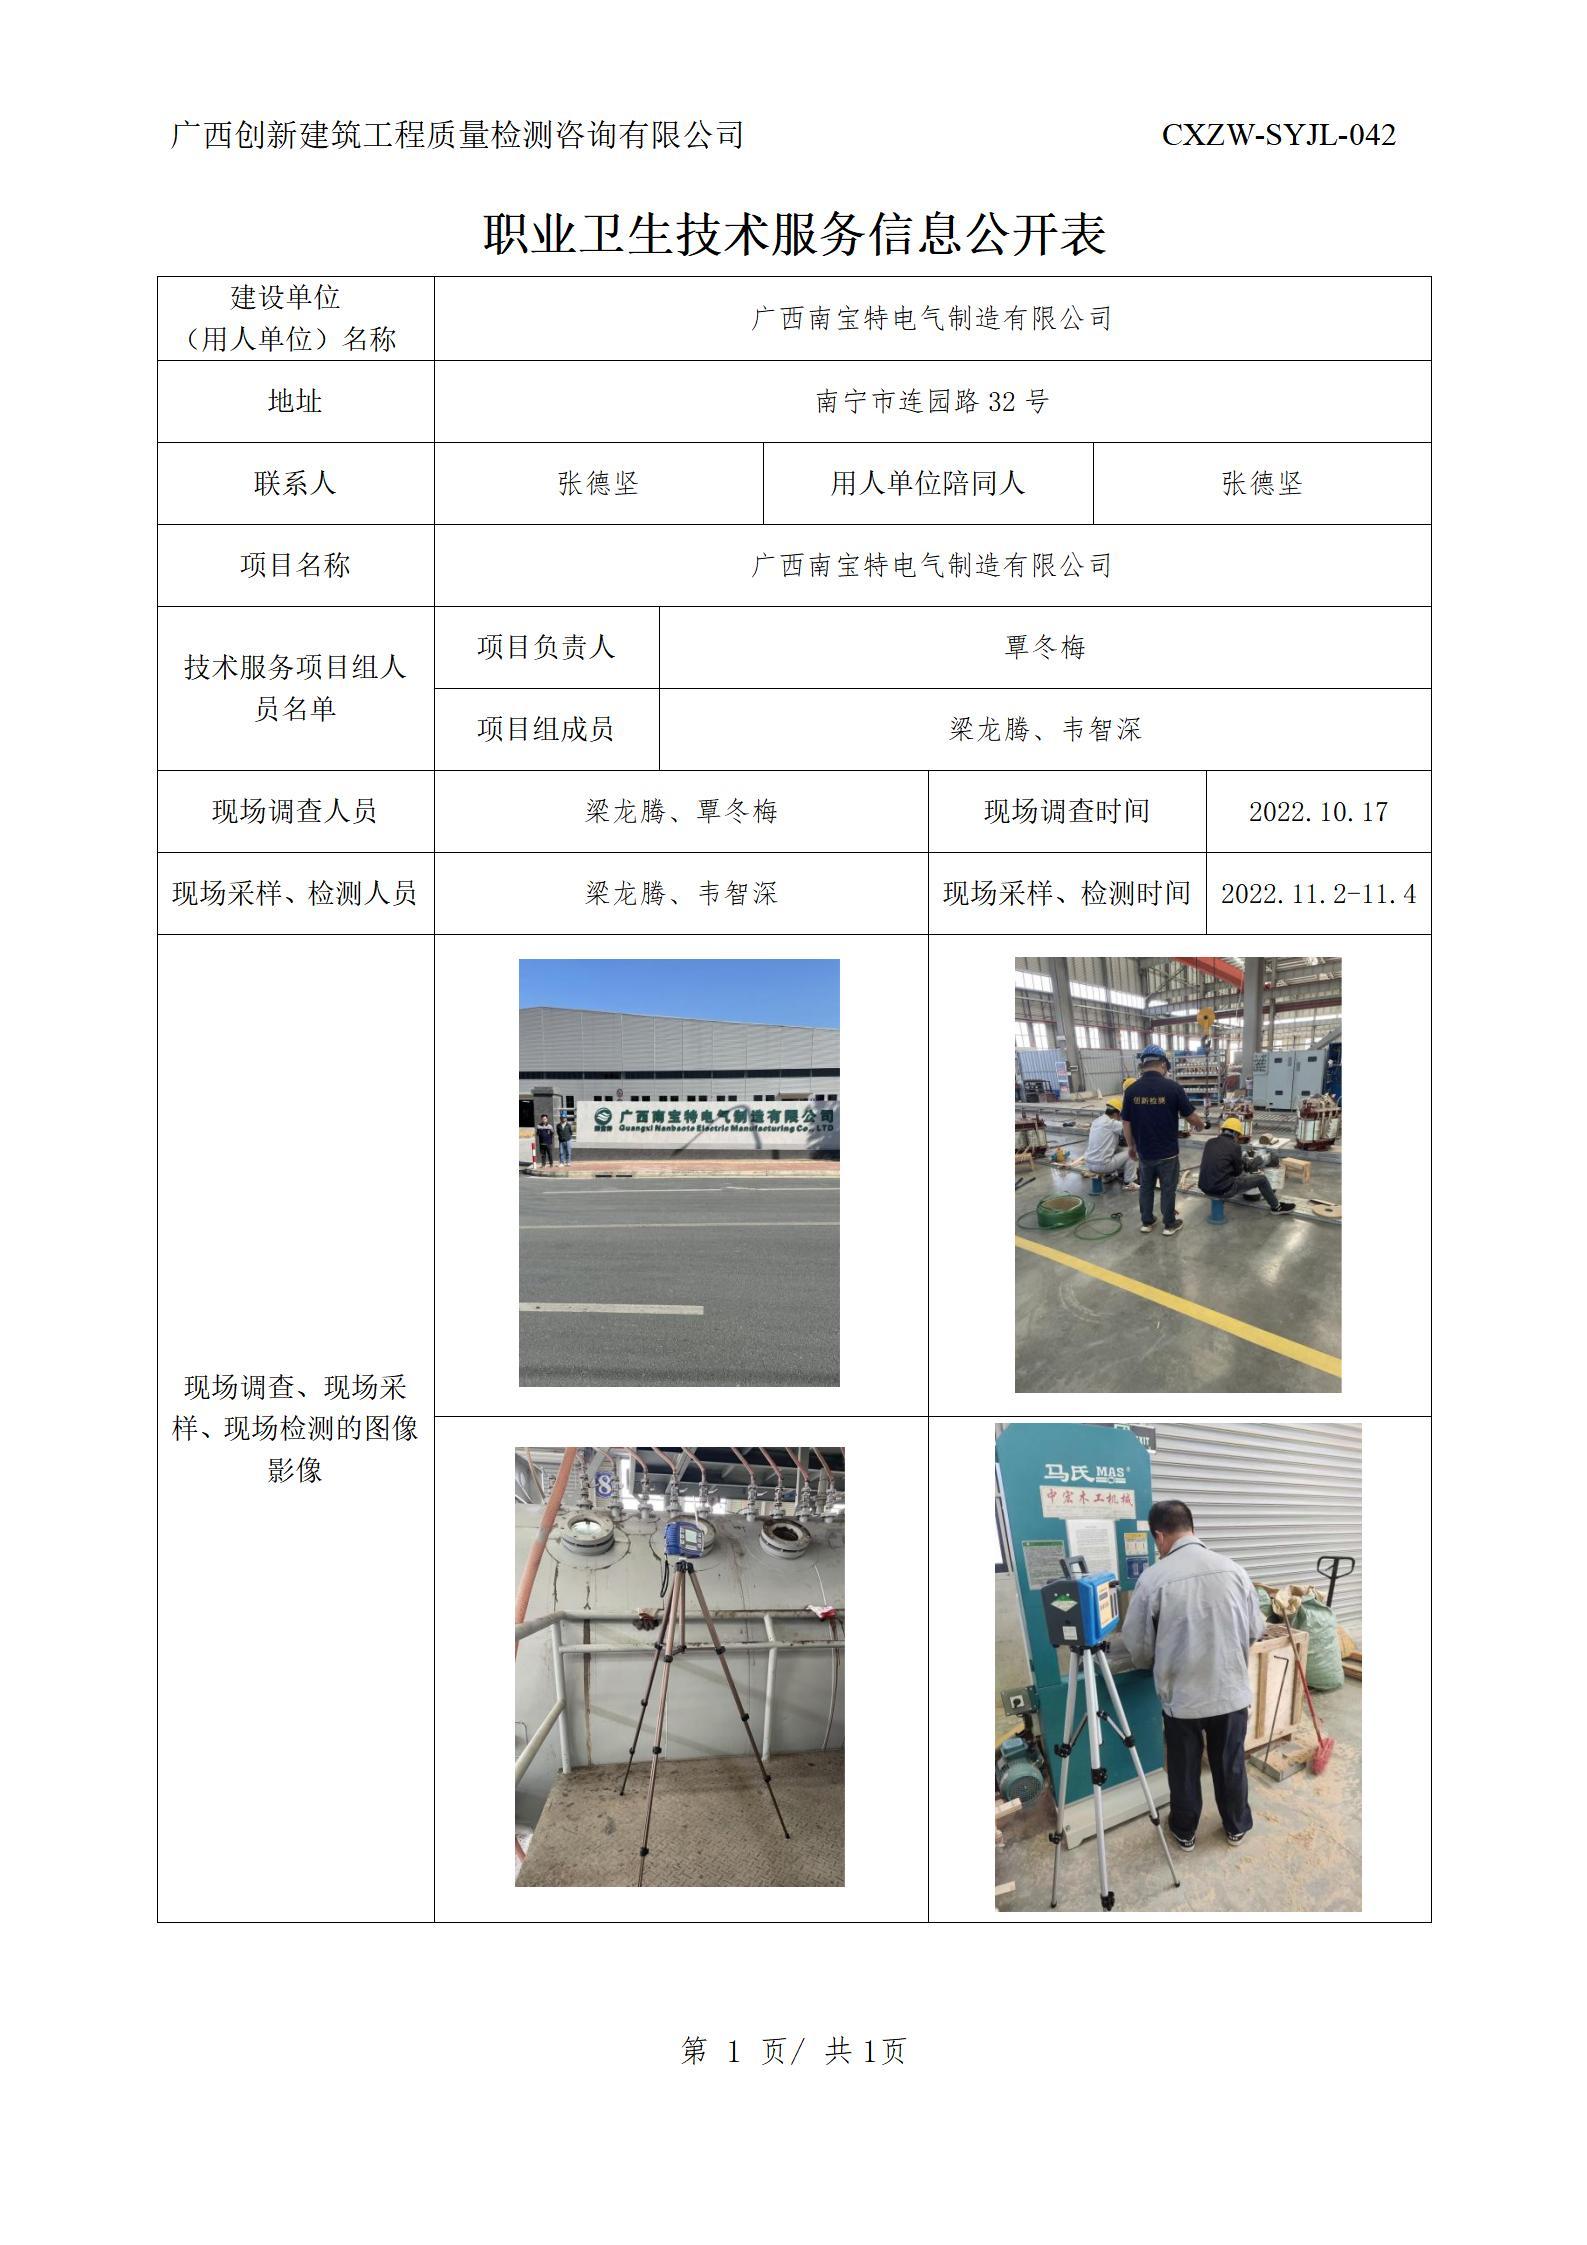 【職業衛生信息公開】廣西南寶特電氣制造有限公司